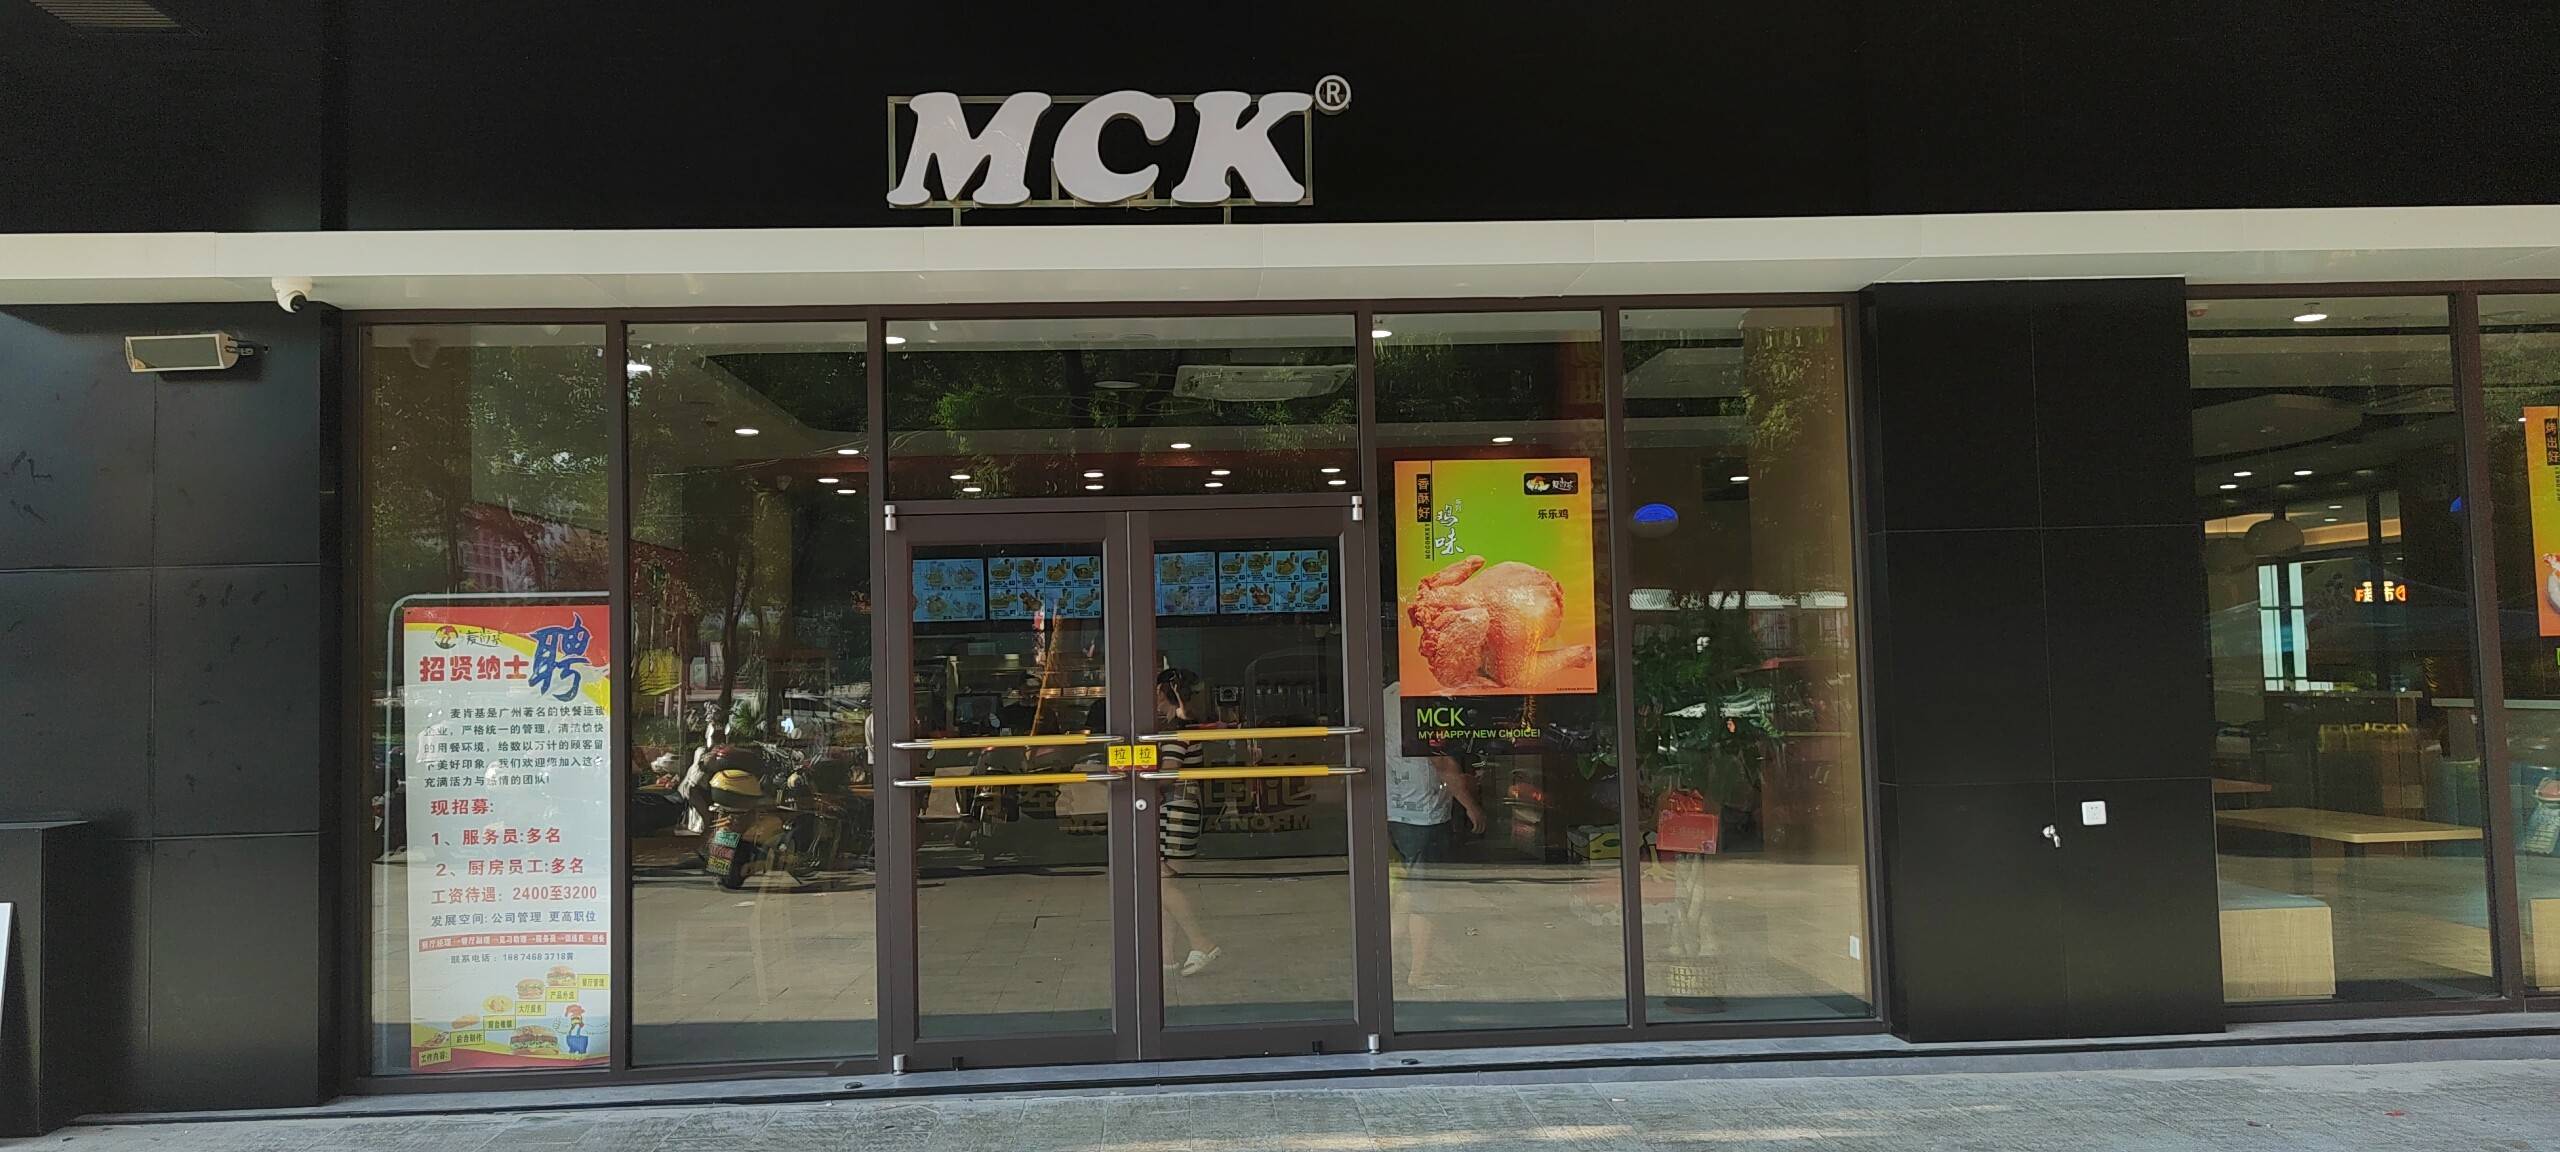 宁远县麦肯基餐厅